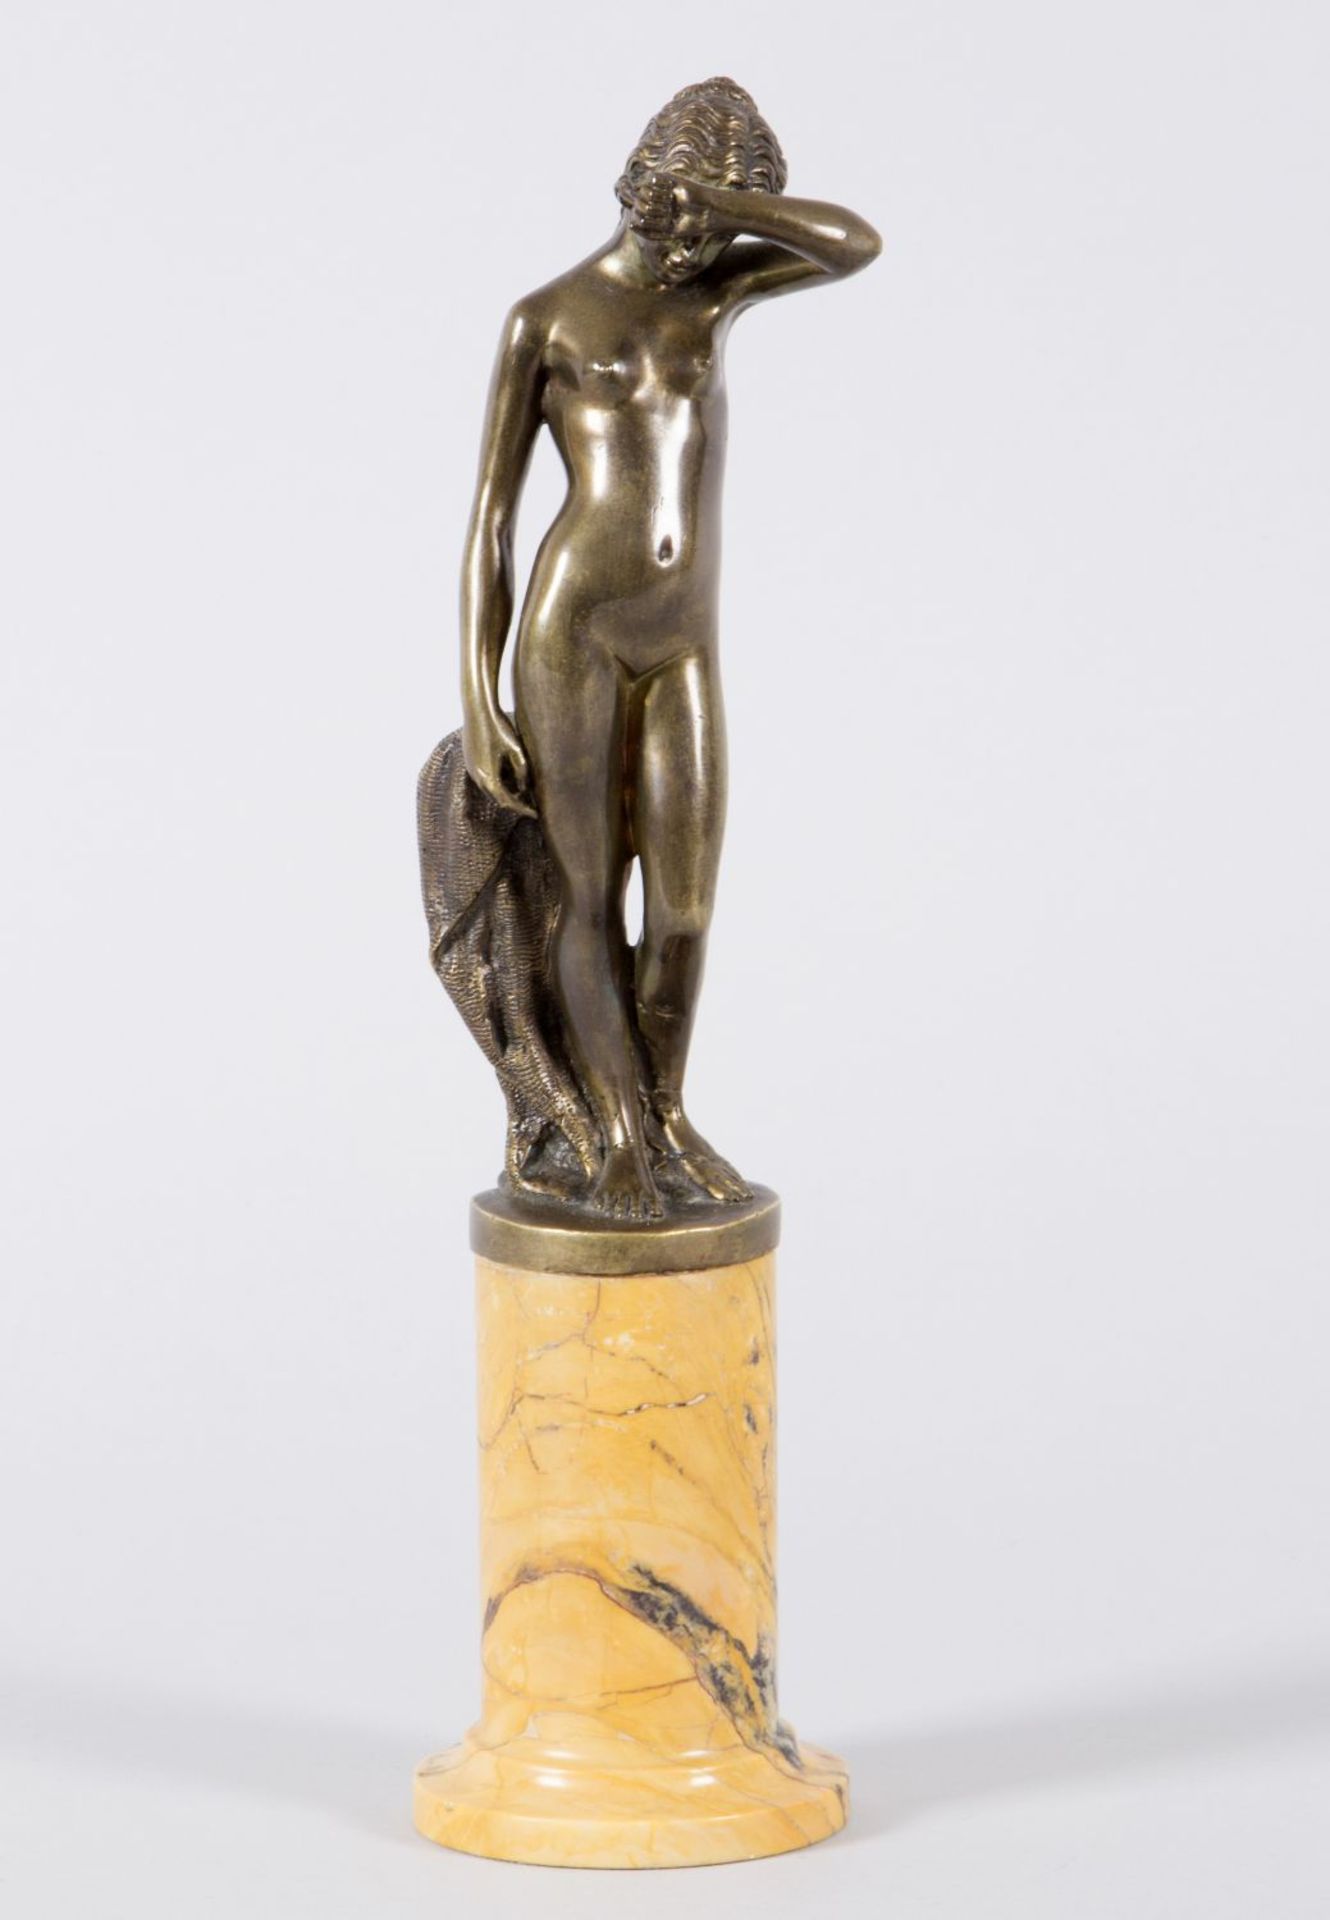 Deutsch, Anf. 20. Jh. Stehender weiblicher Akt. Bronze. H. 20 cm. Auf Marmorsockel. Riss am linken F